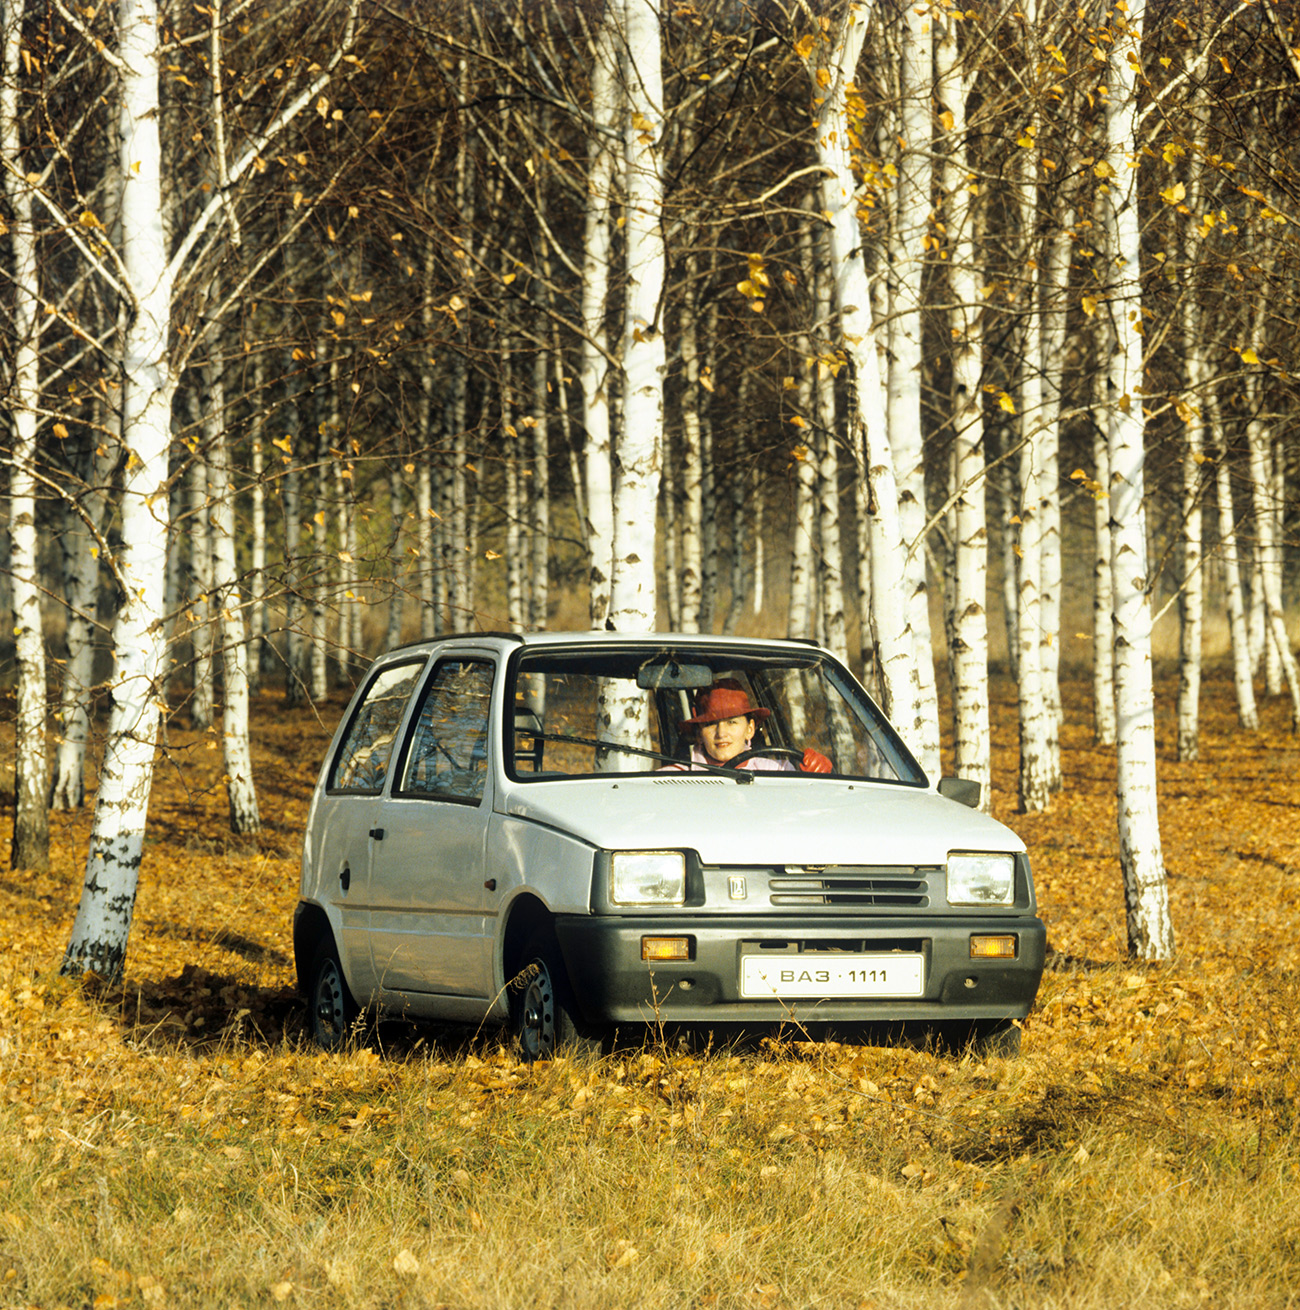 Италијански стручњаци су радили на АвтоВАЗ-овим моделима у првим годинама њихове производње, а совјетски дизајнери свој самостални рад почињу крајем седамдесетих.  